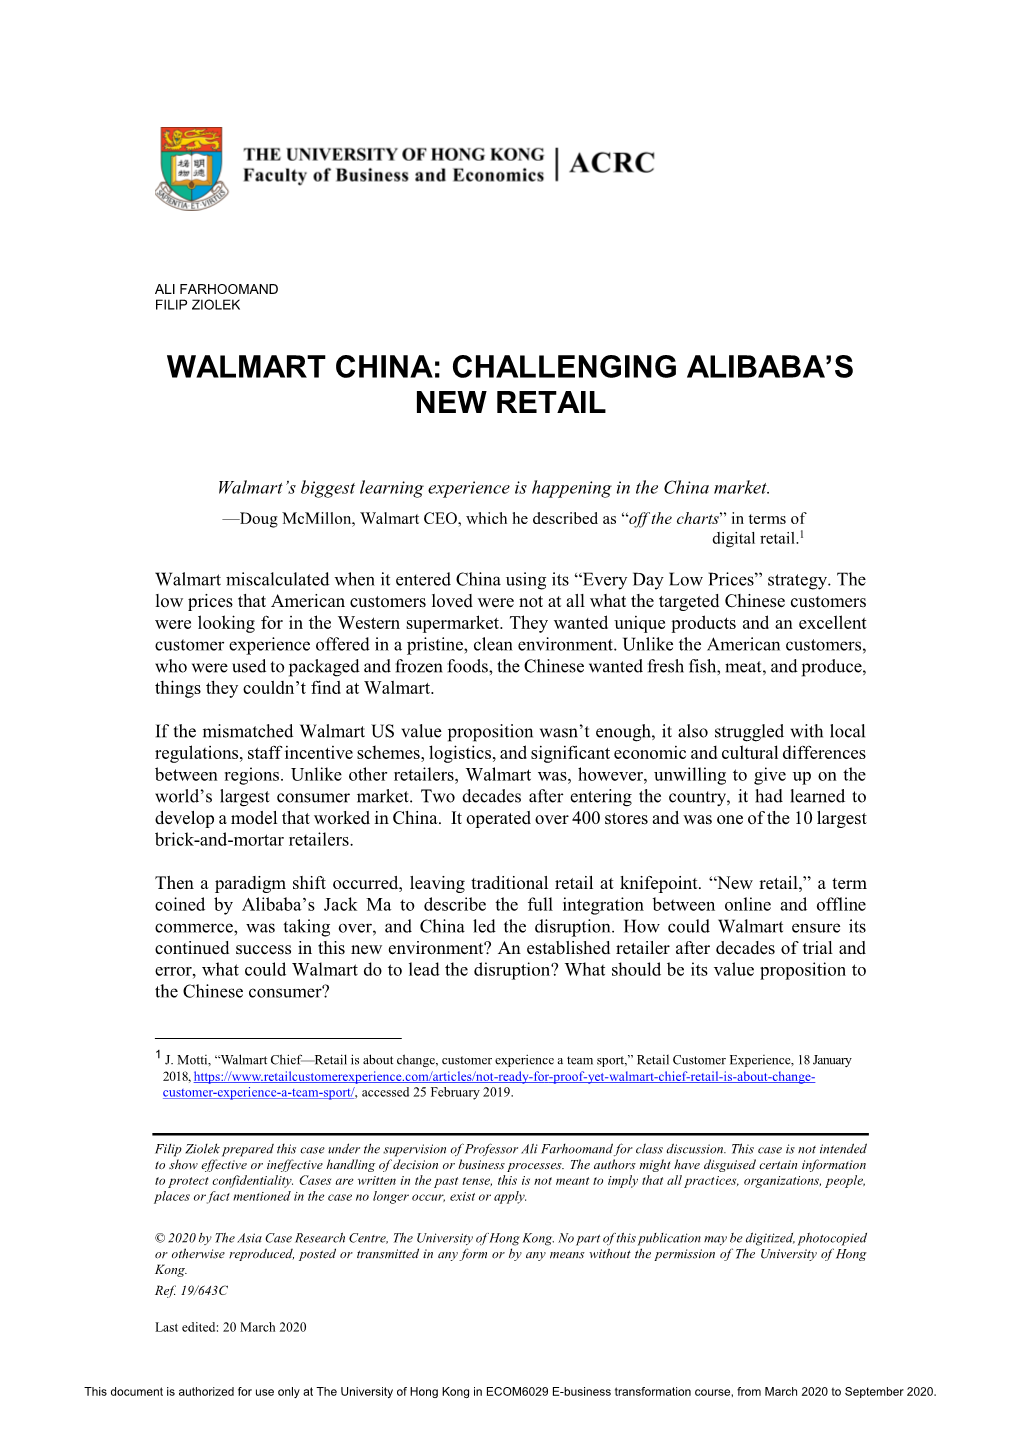 Walmart China: Challenging Alibaba’S New Retail